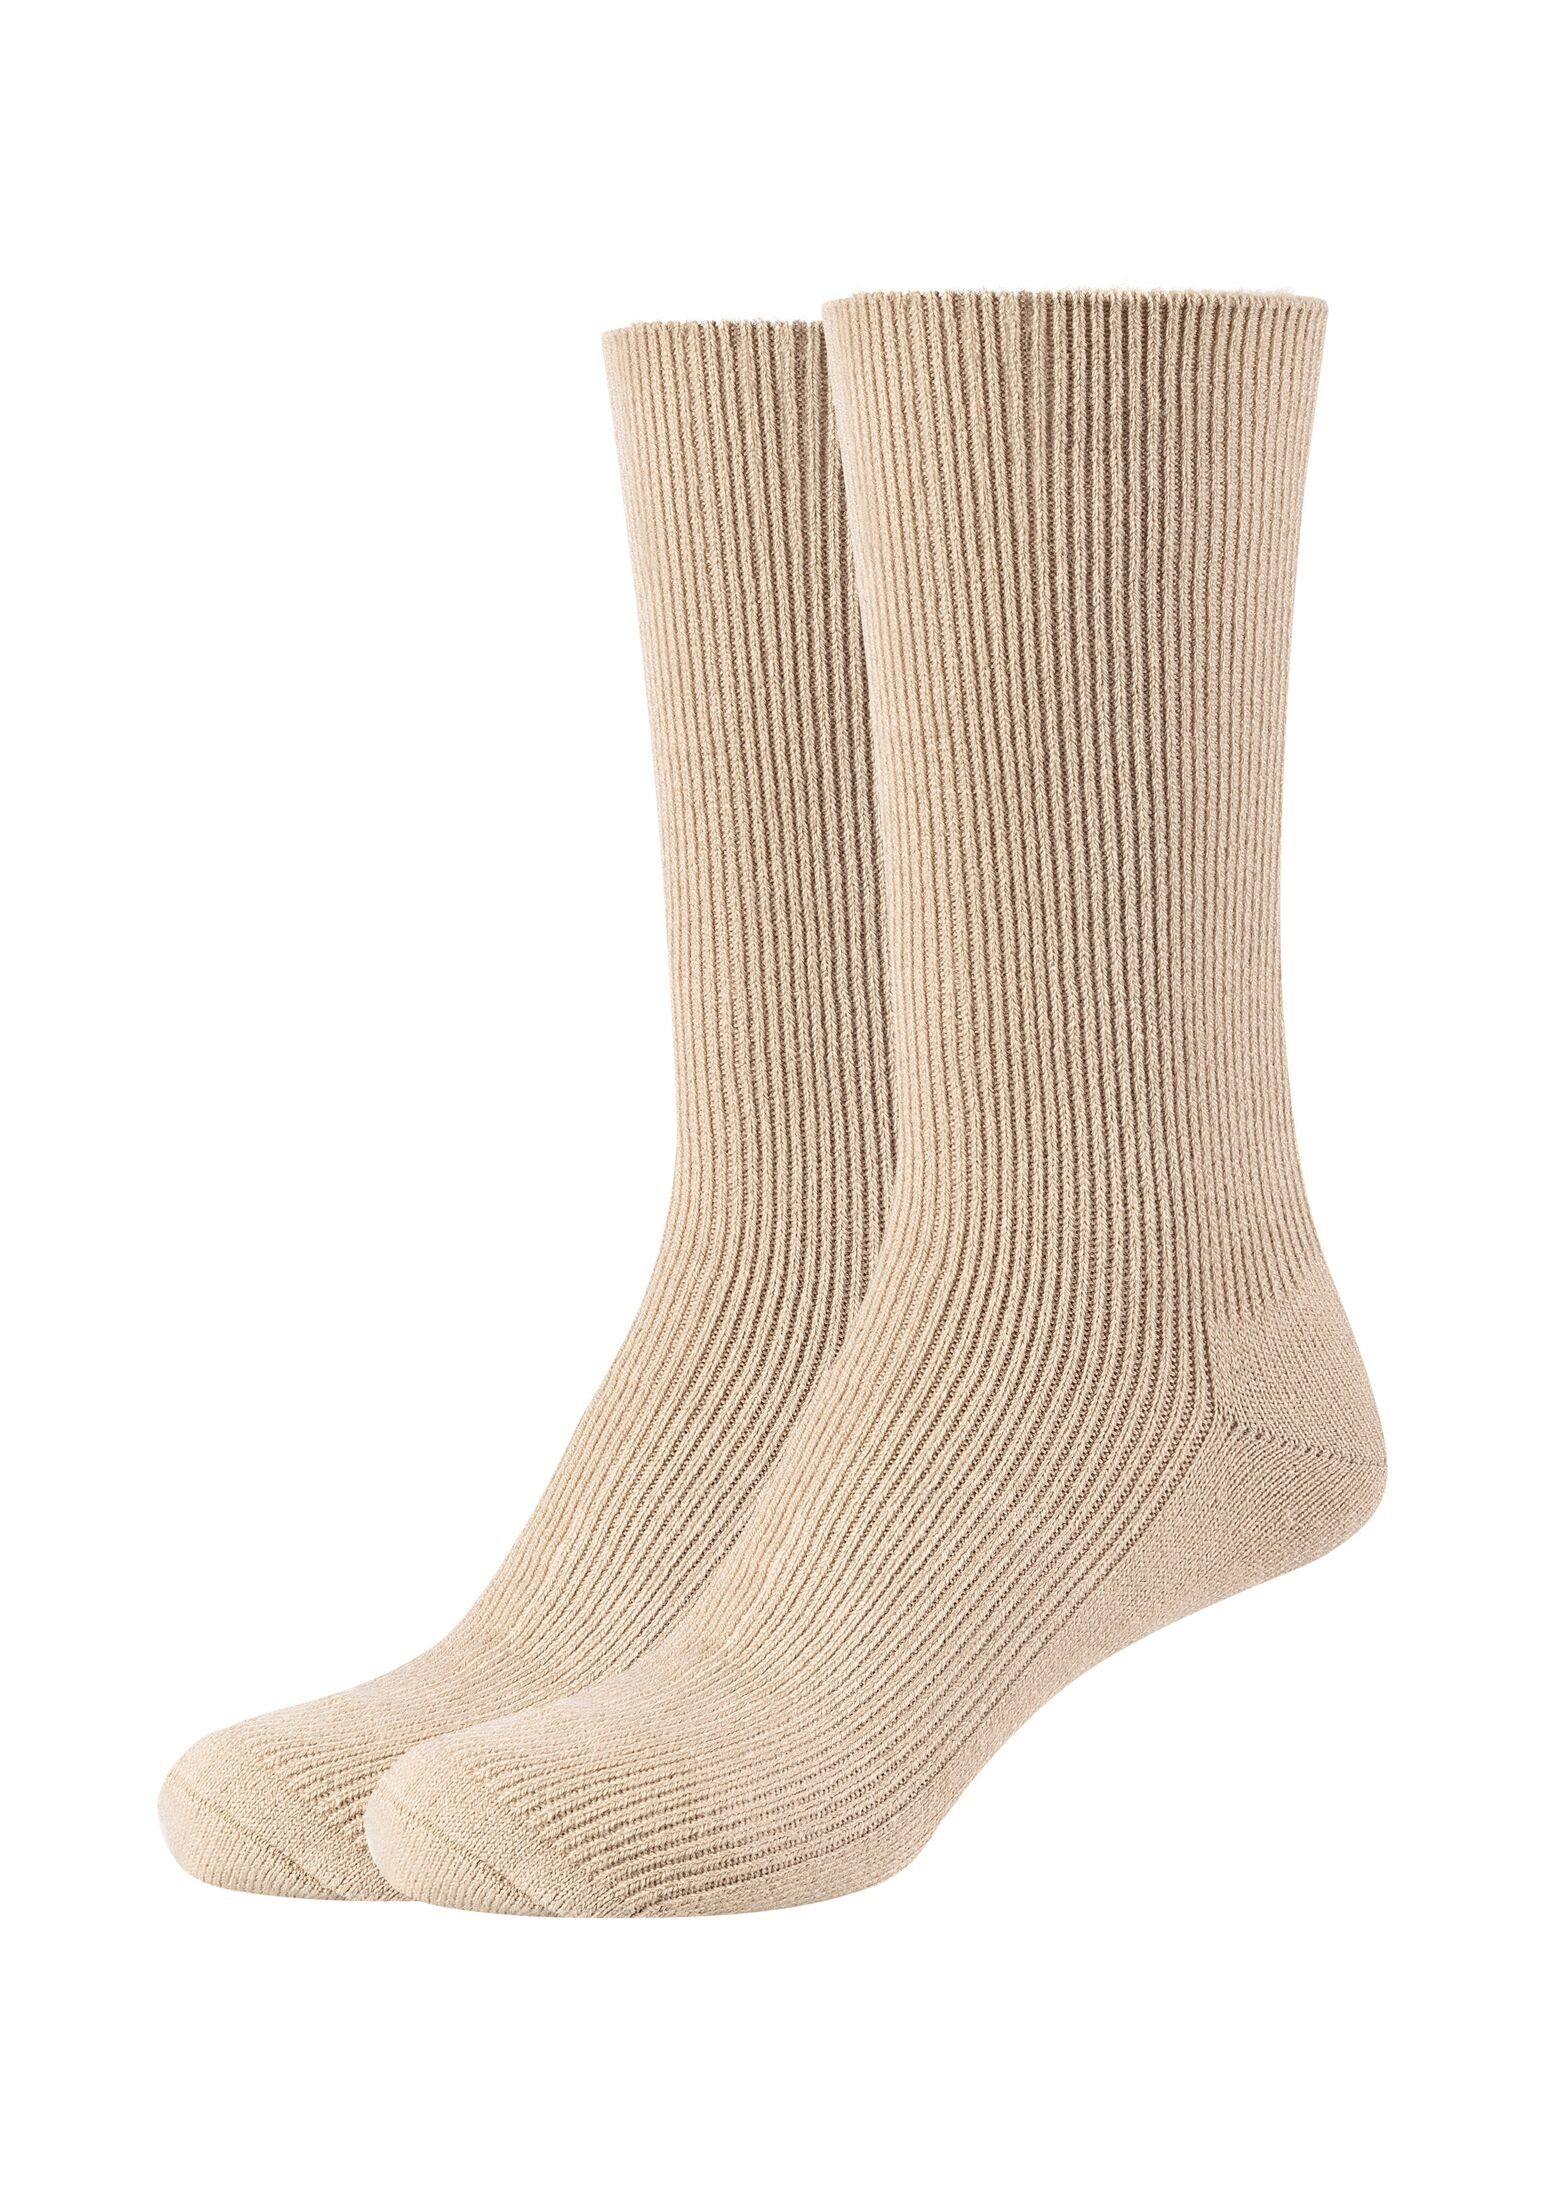 s.Oliver Socken Socken 2er Pack, Warm & Gemütlich: Perfekt für Kälte